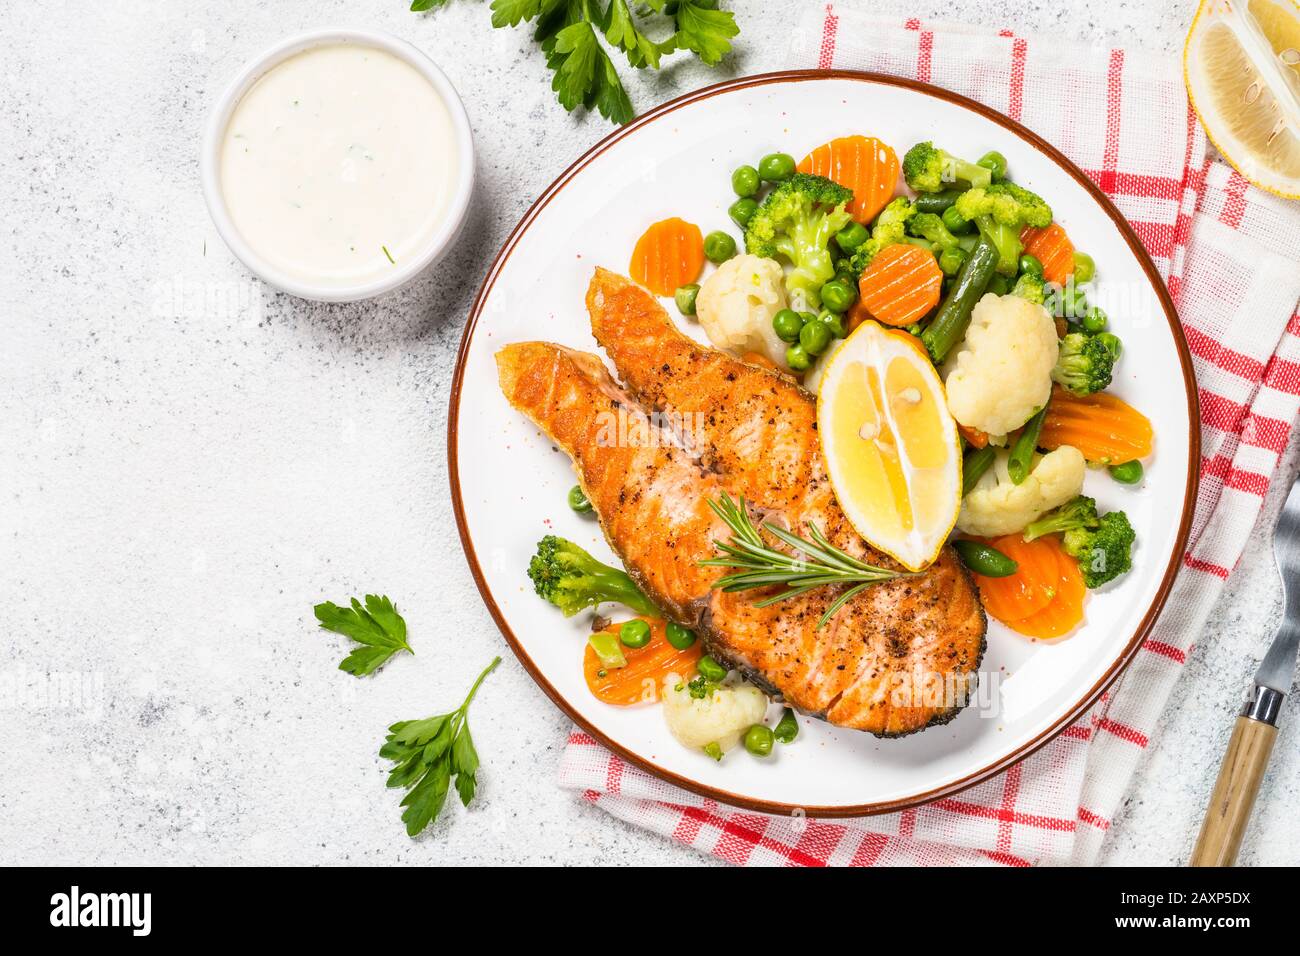 Gegrillter Lachs Fisch Steak mit Gemüse auf Weiß. Stockfoto